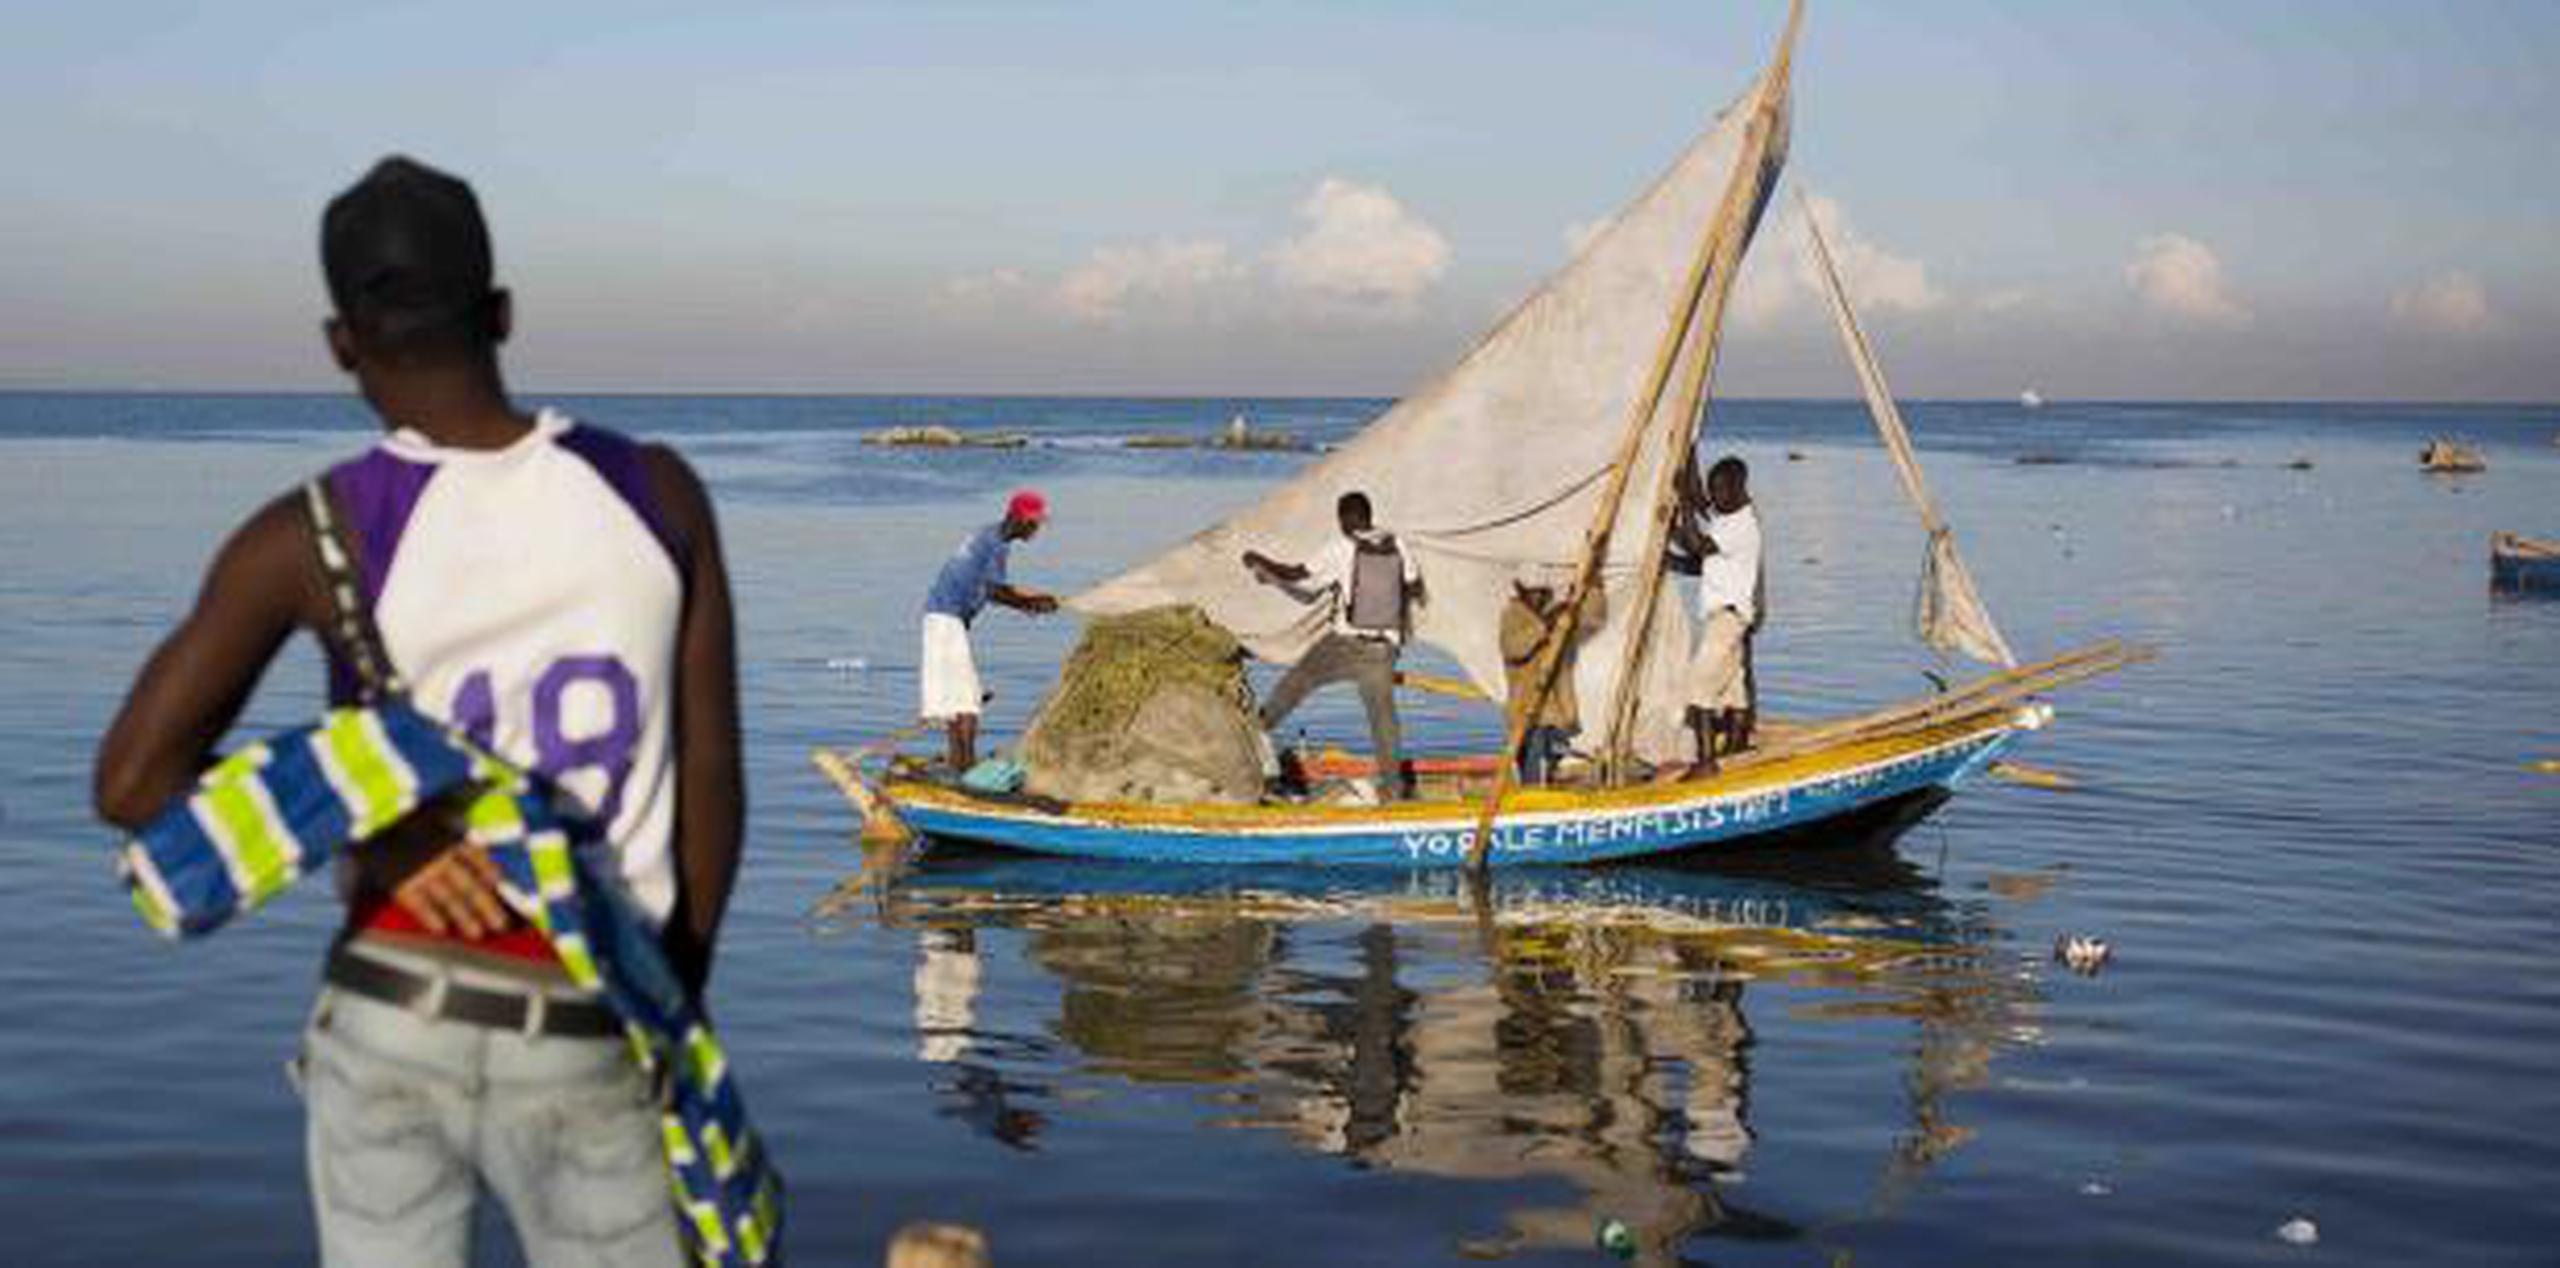 Los hechos se producen 16 días después de que, al menos, 31 haitianos fallecieran el sábado 2 de febrero tras naufragar un barco cuando intentaba entrar de forma ilegal en el territorio atlántico. (Archivo)